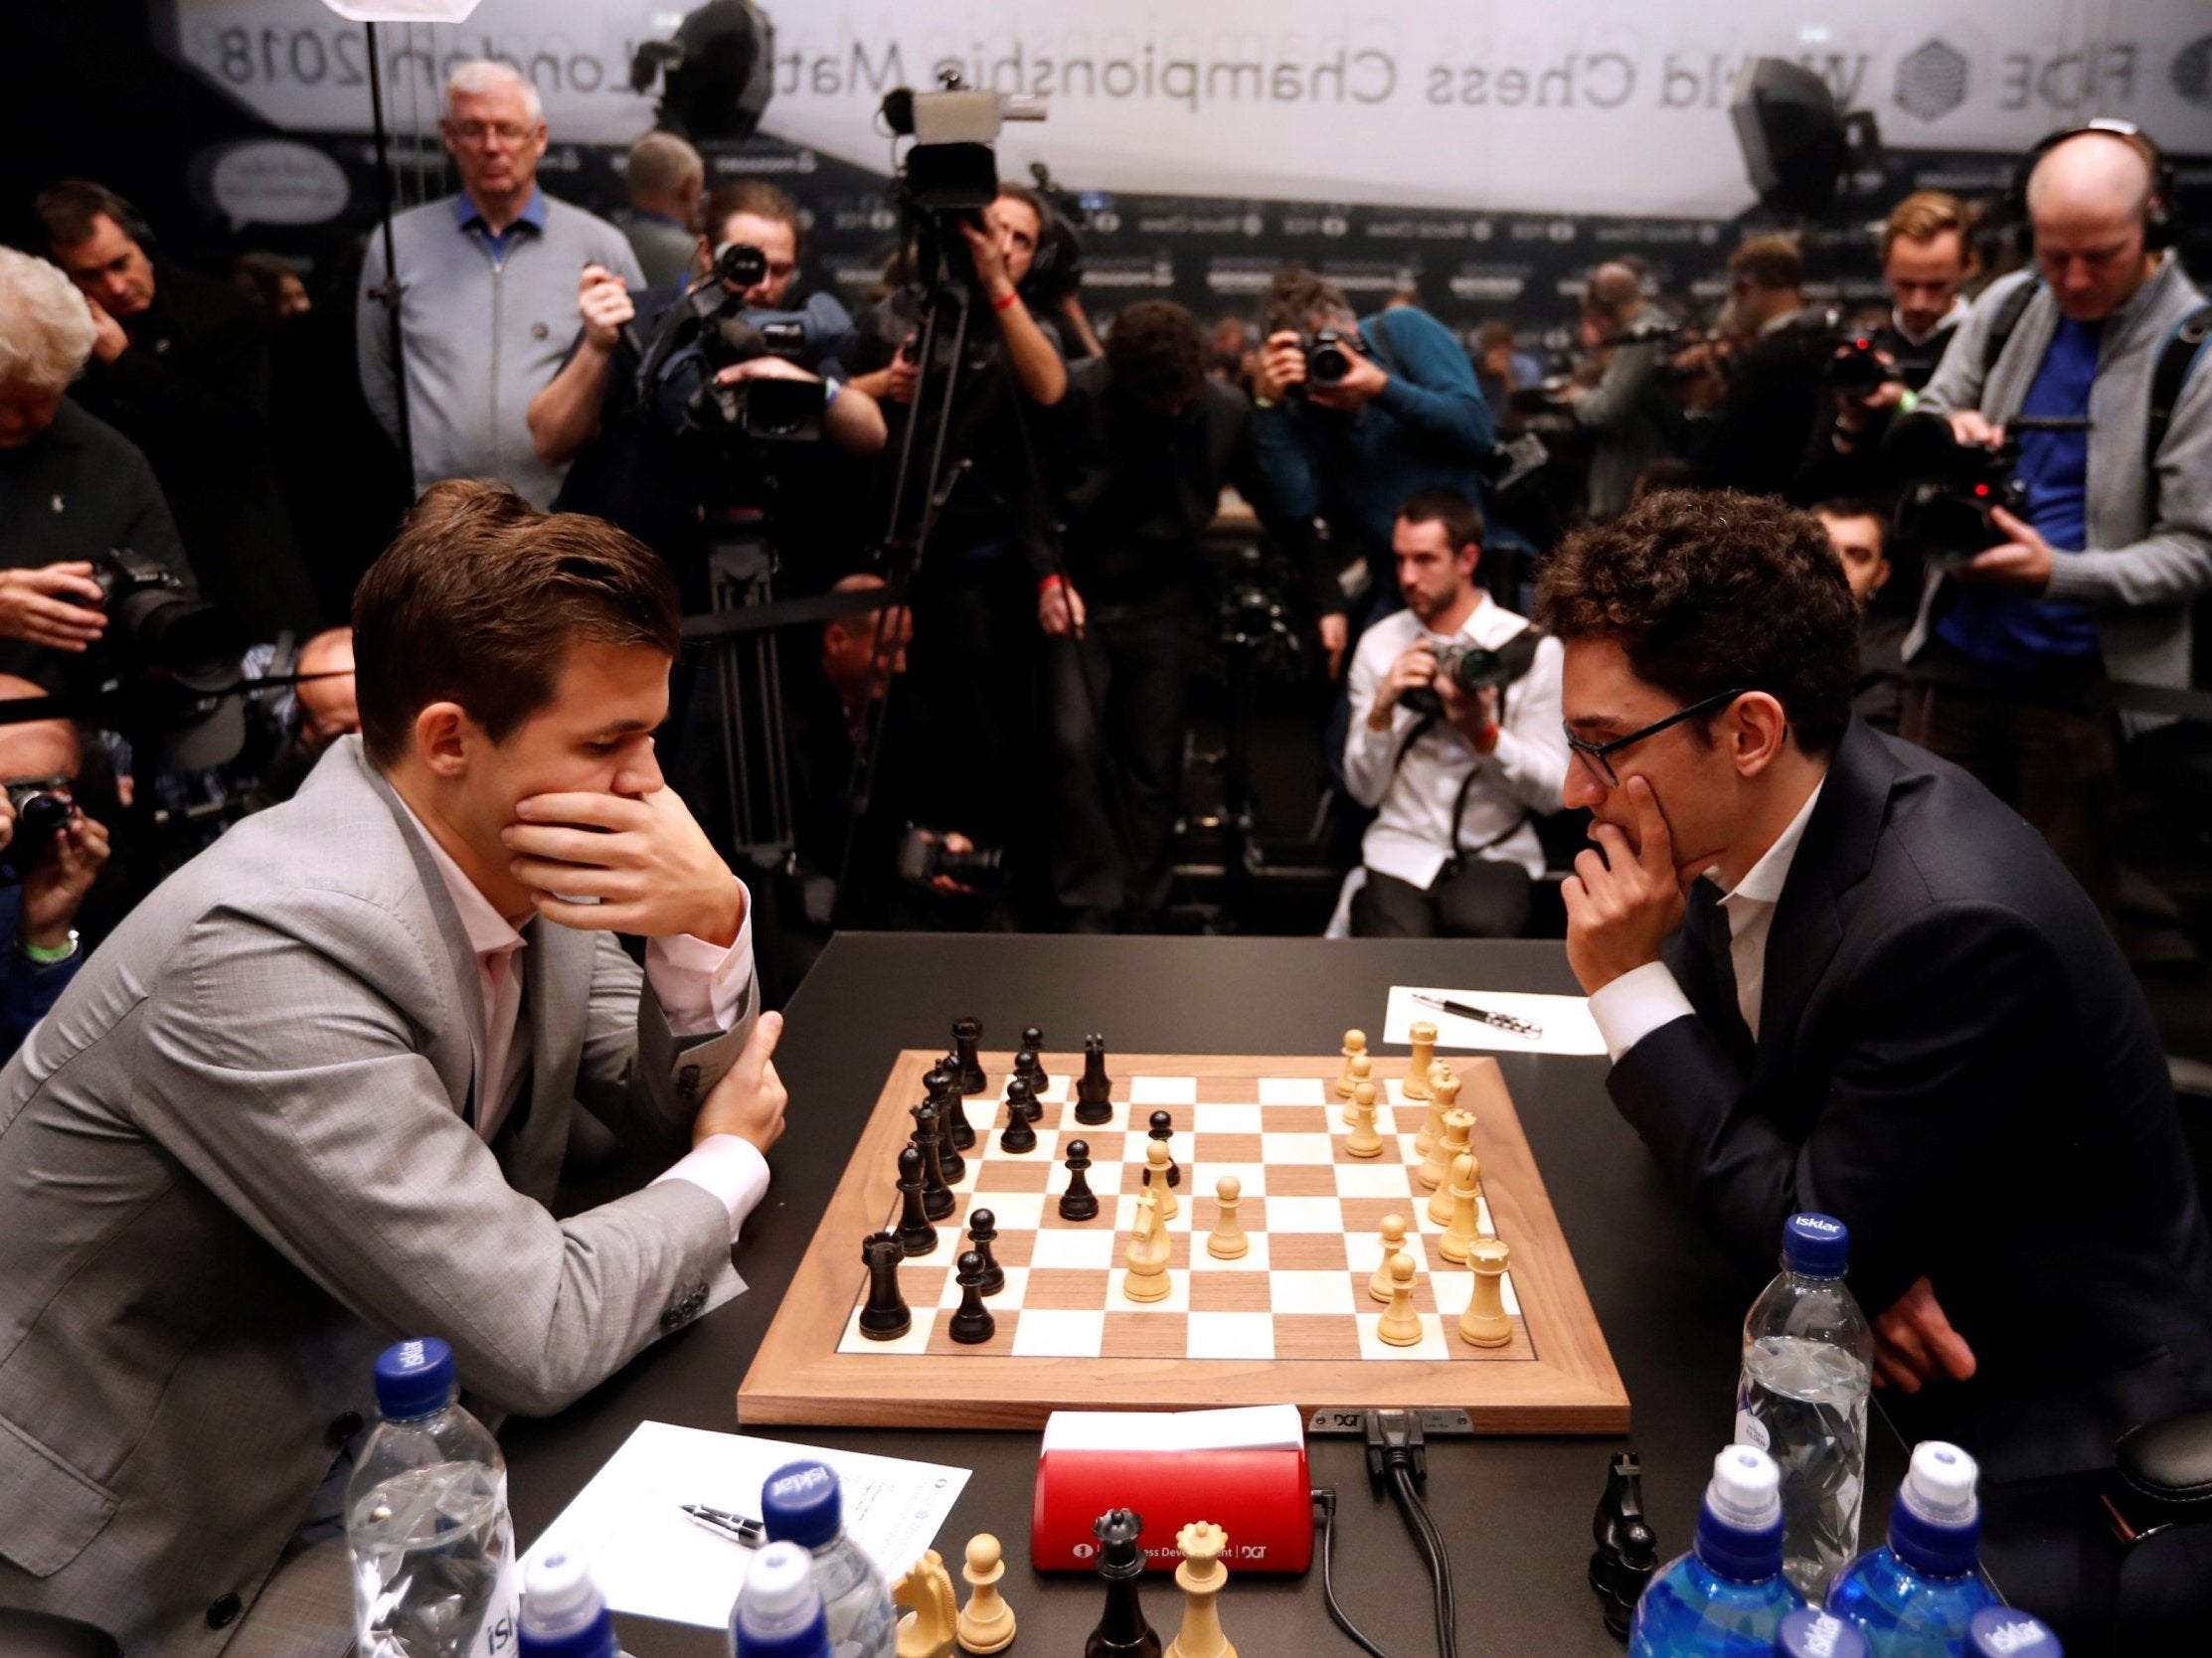 Magnus Carlsen beats Fabiano Caruana to win World Chess